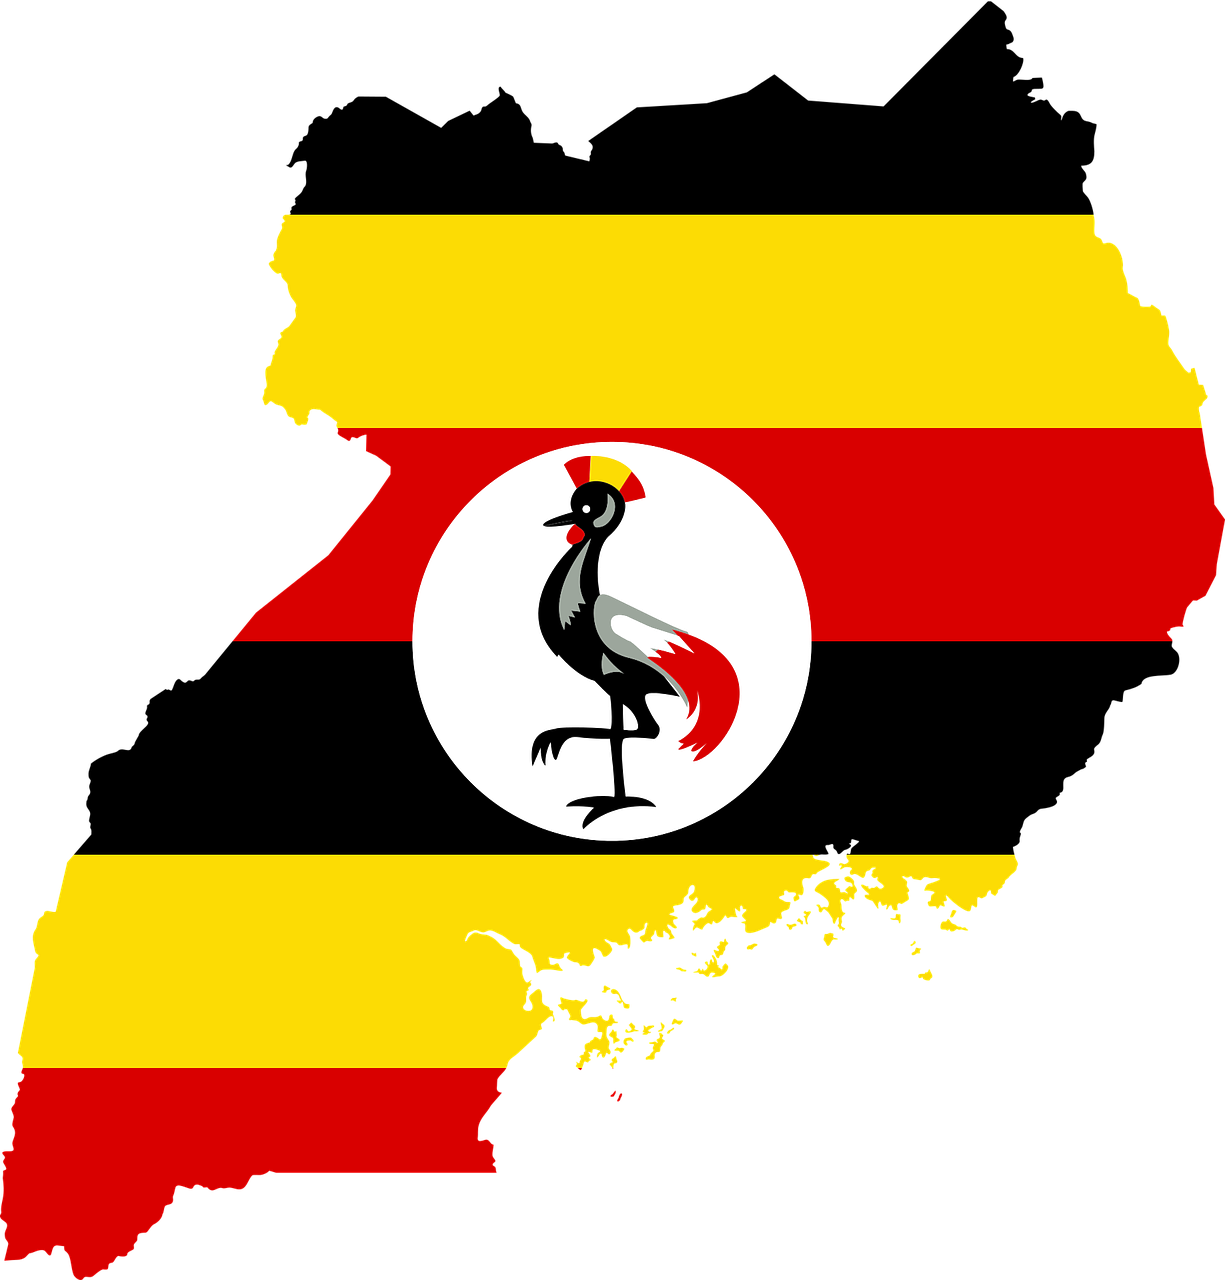 El presidente de Uganda advierte contra el “sinsentido” homosexual